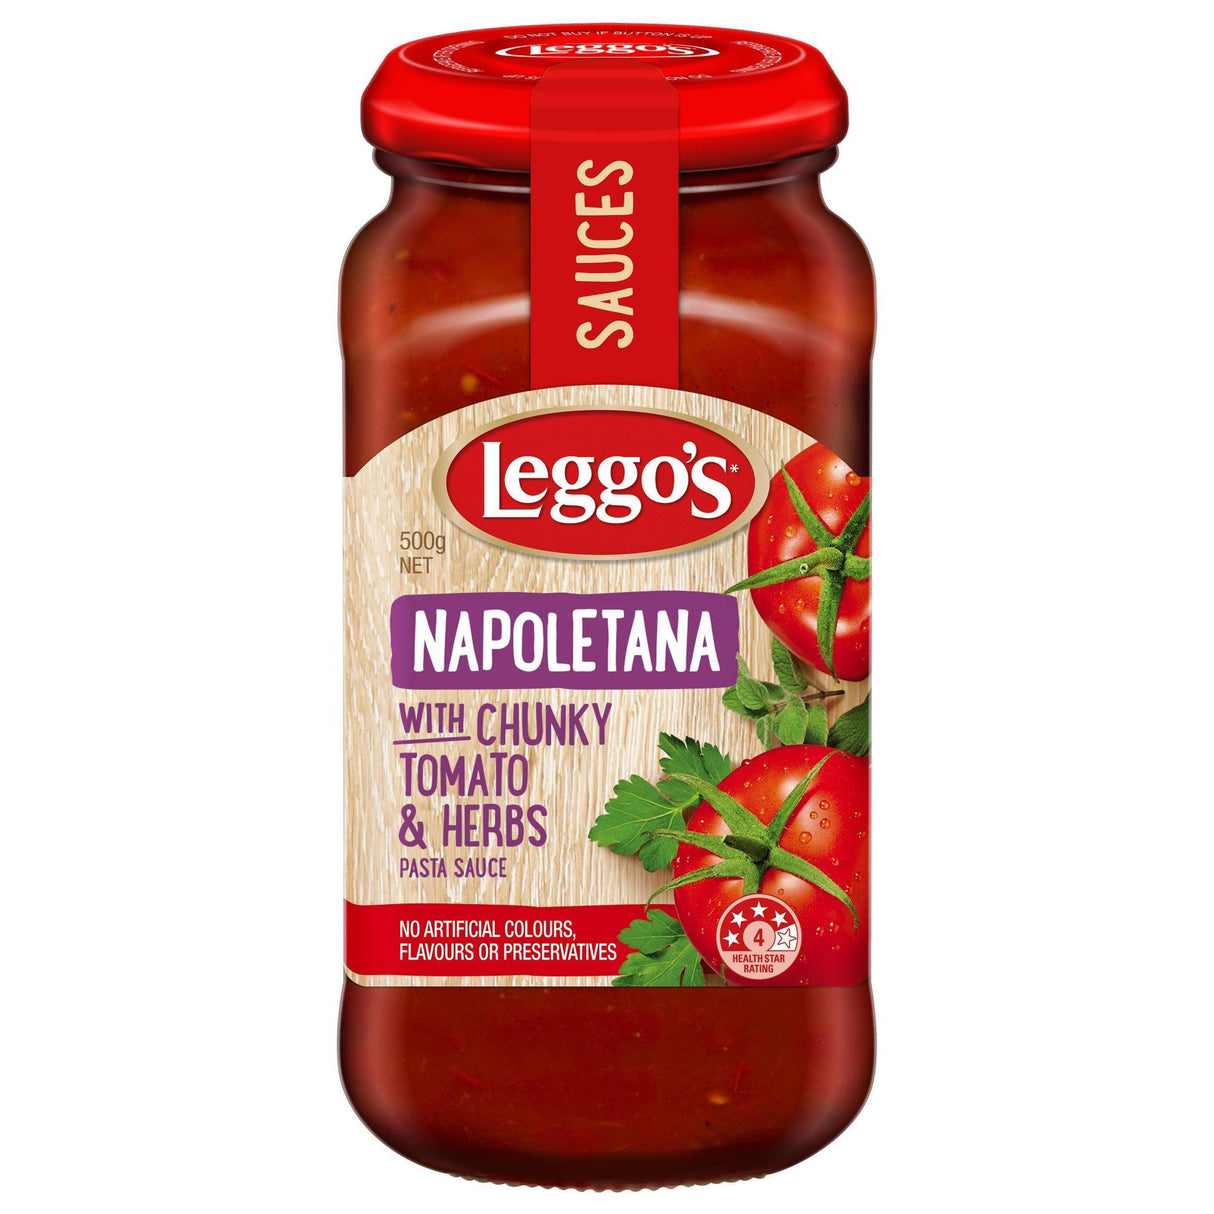 Leggos Napoletana With Chunky Tomato & Herbs Pasta Sauce 500g